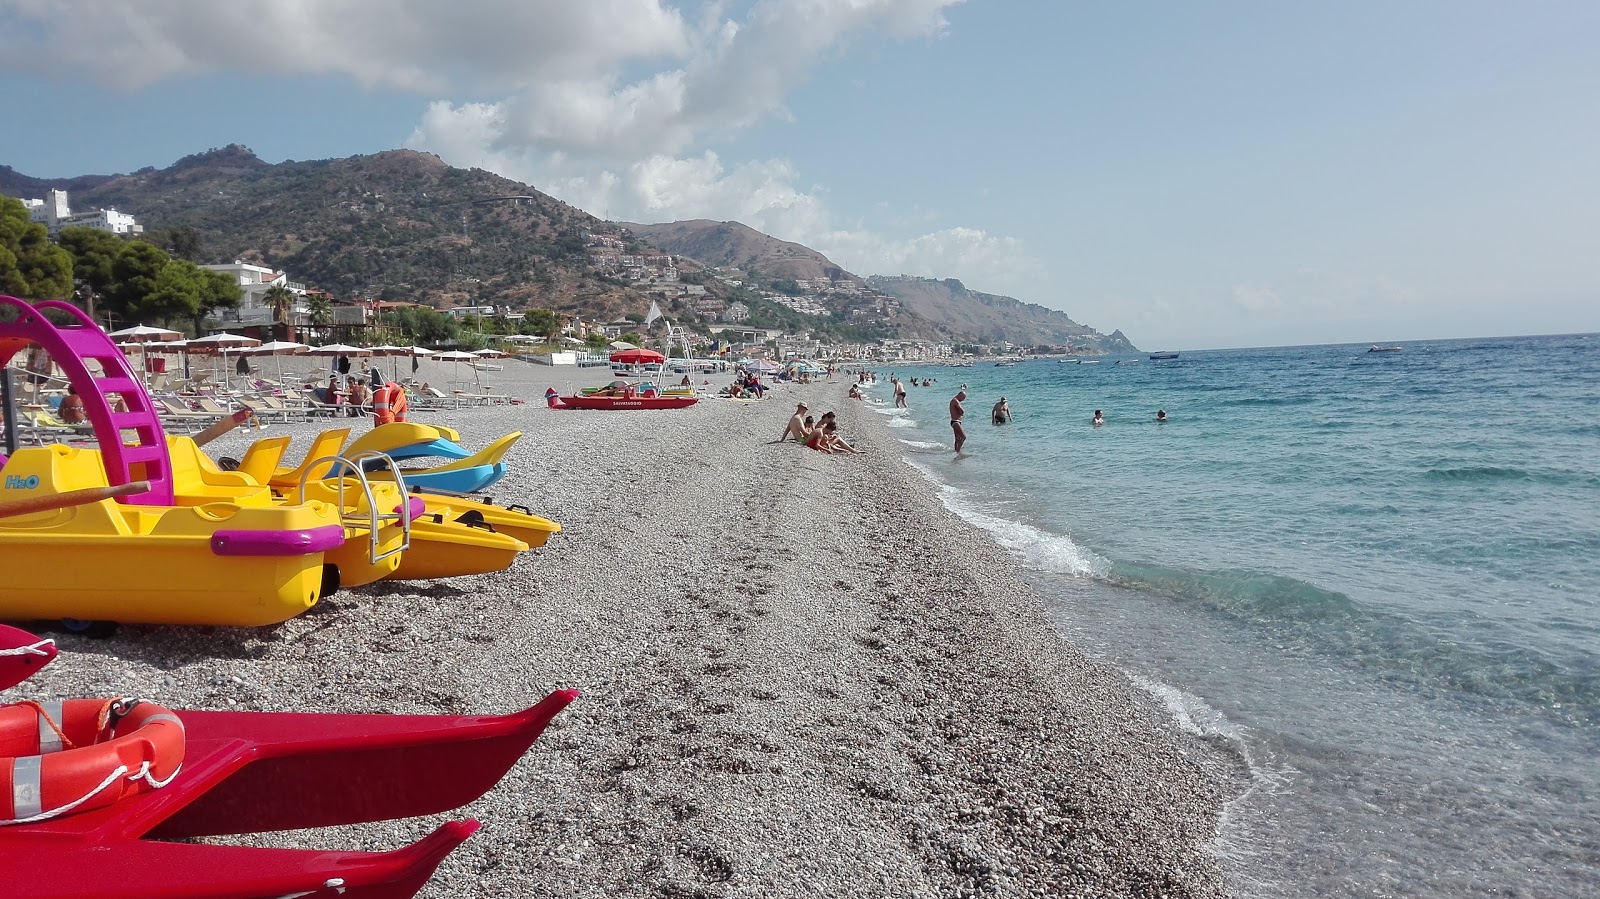 Spiaggia di Mazzeo'in fotoğrafı - rahatlamayı sevenler arasında popüler bir yer